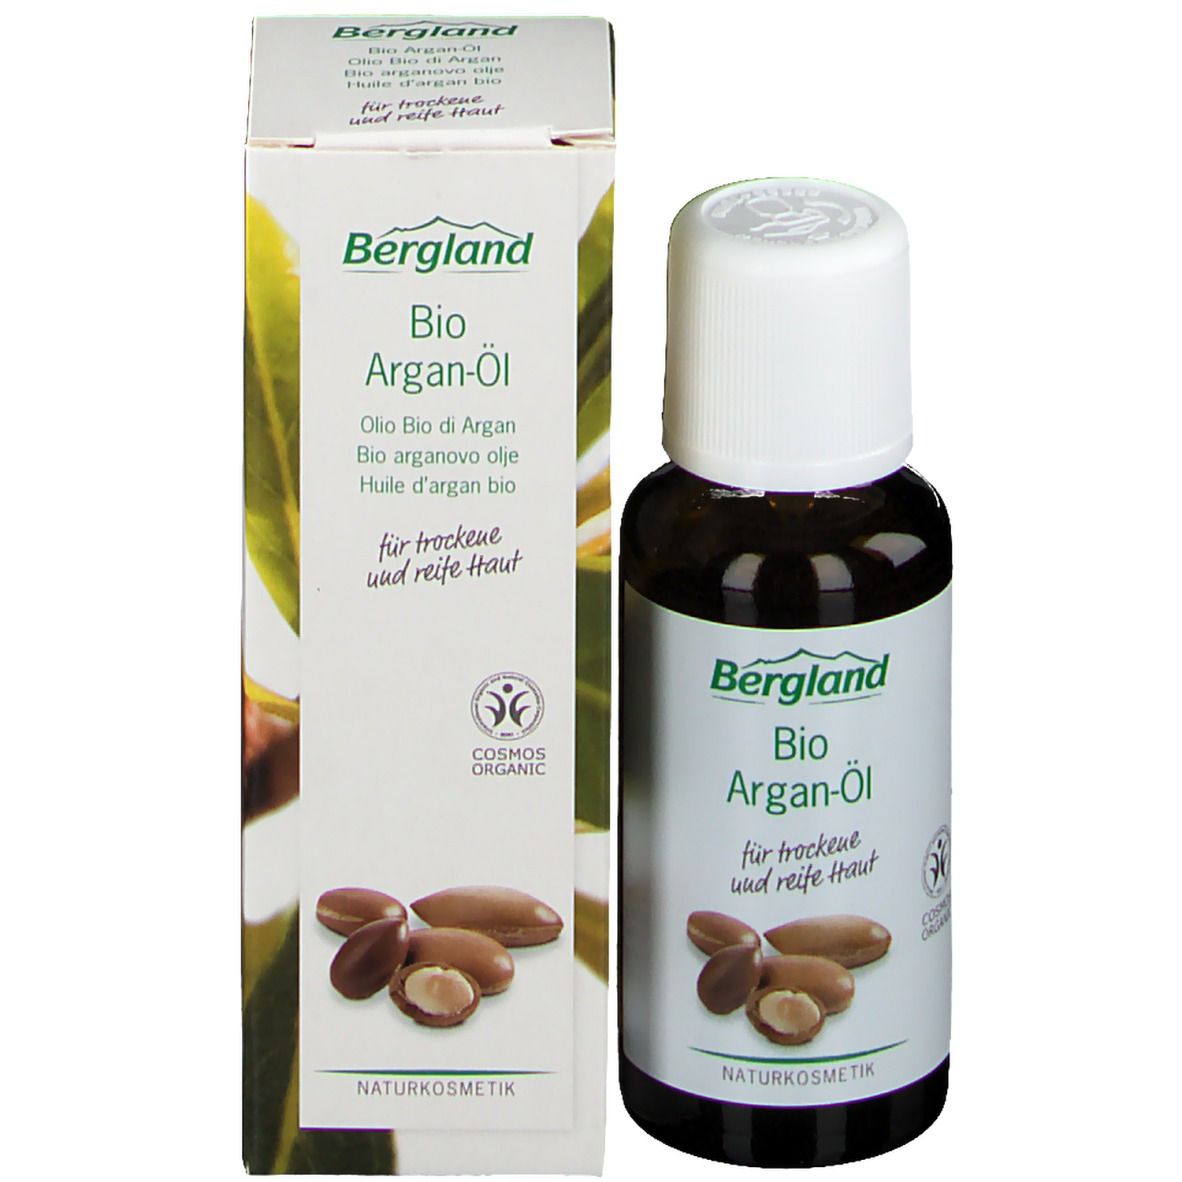 Bio Argan-Öl